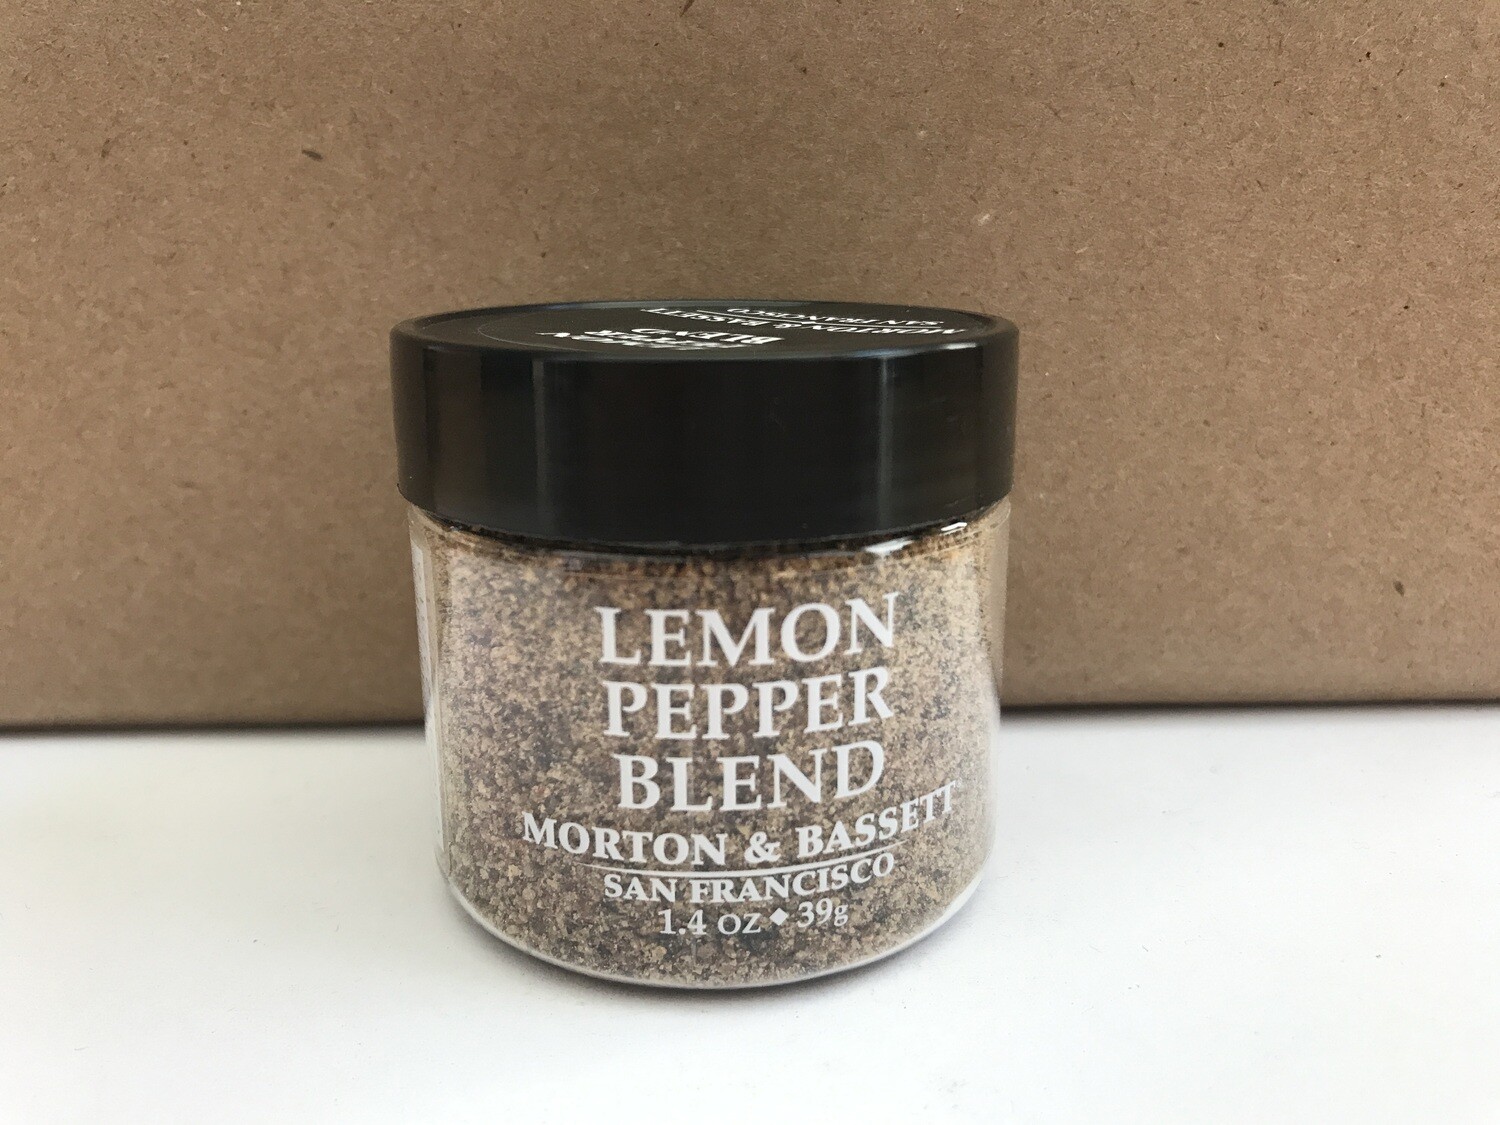 Grocery / Spice / Morton & Bassett Lemon Pepper, 1.4 oz